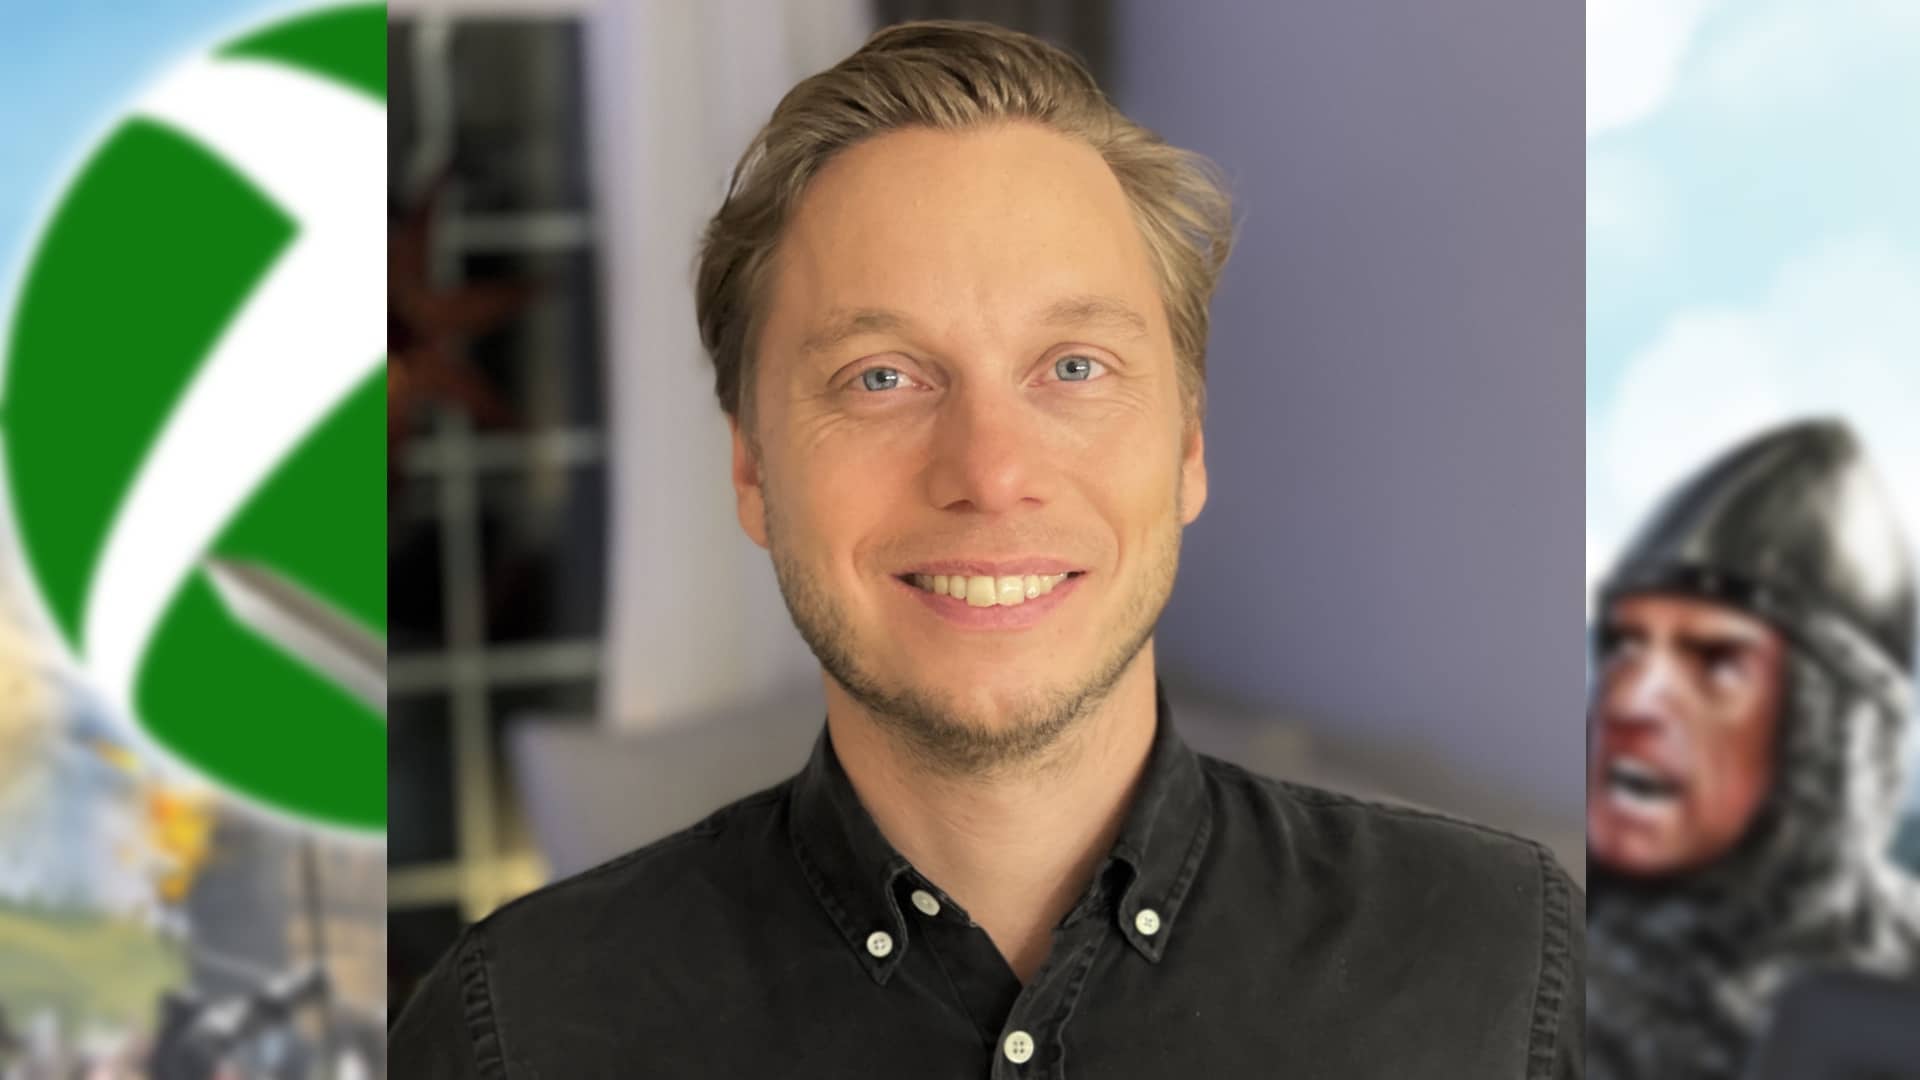 Johan Bolin je marketingový ředitel společnosti Paradox Interactive.